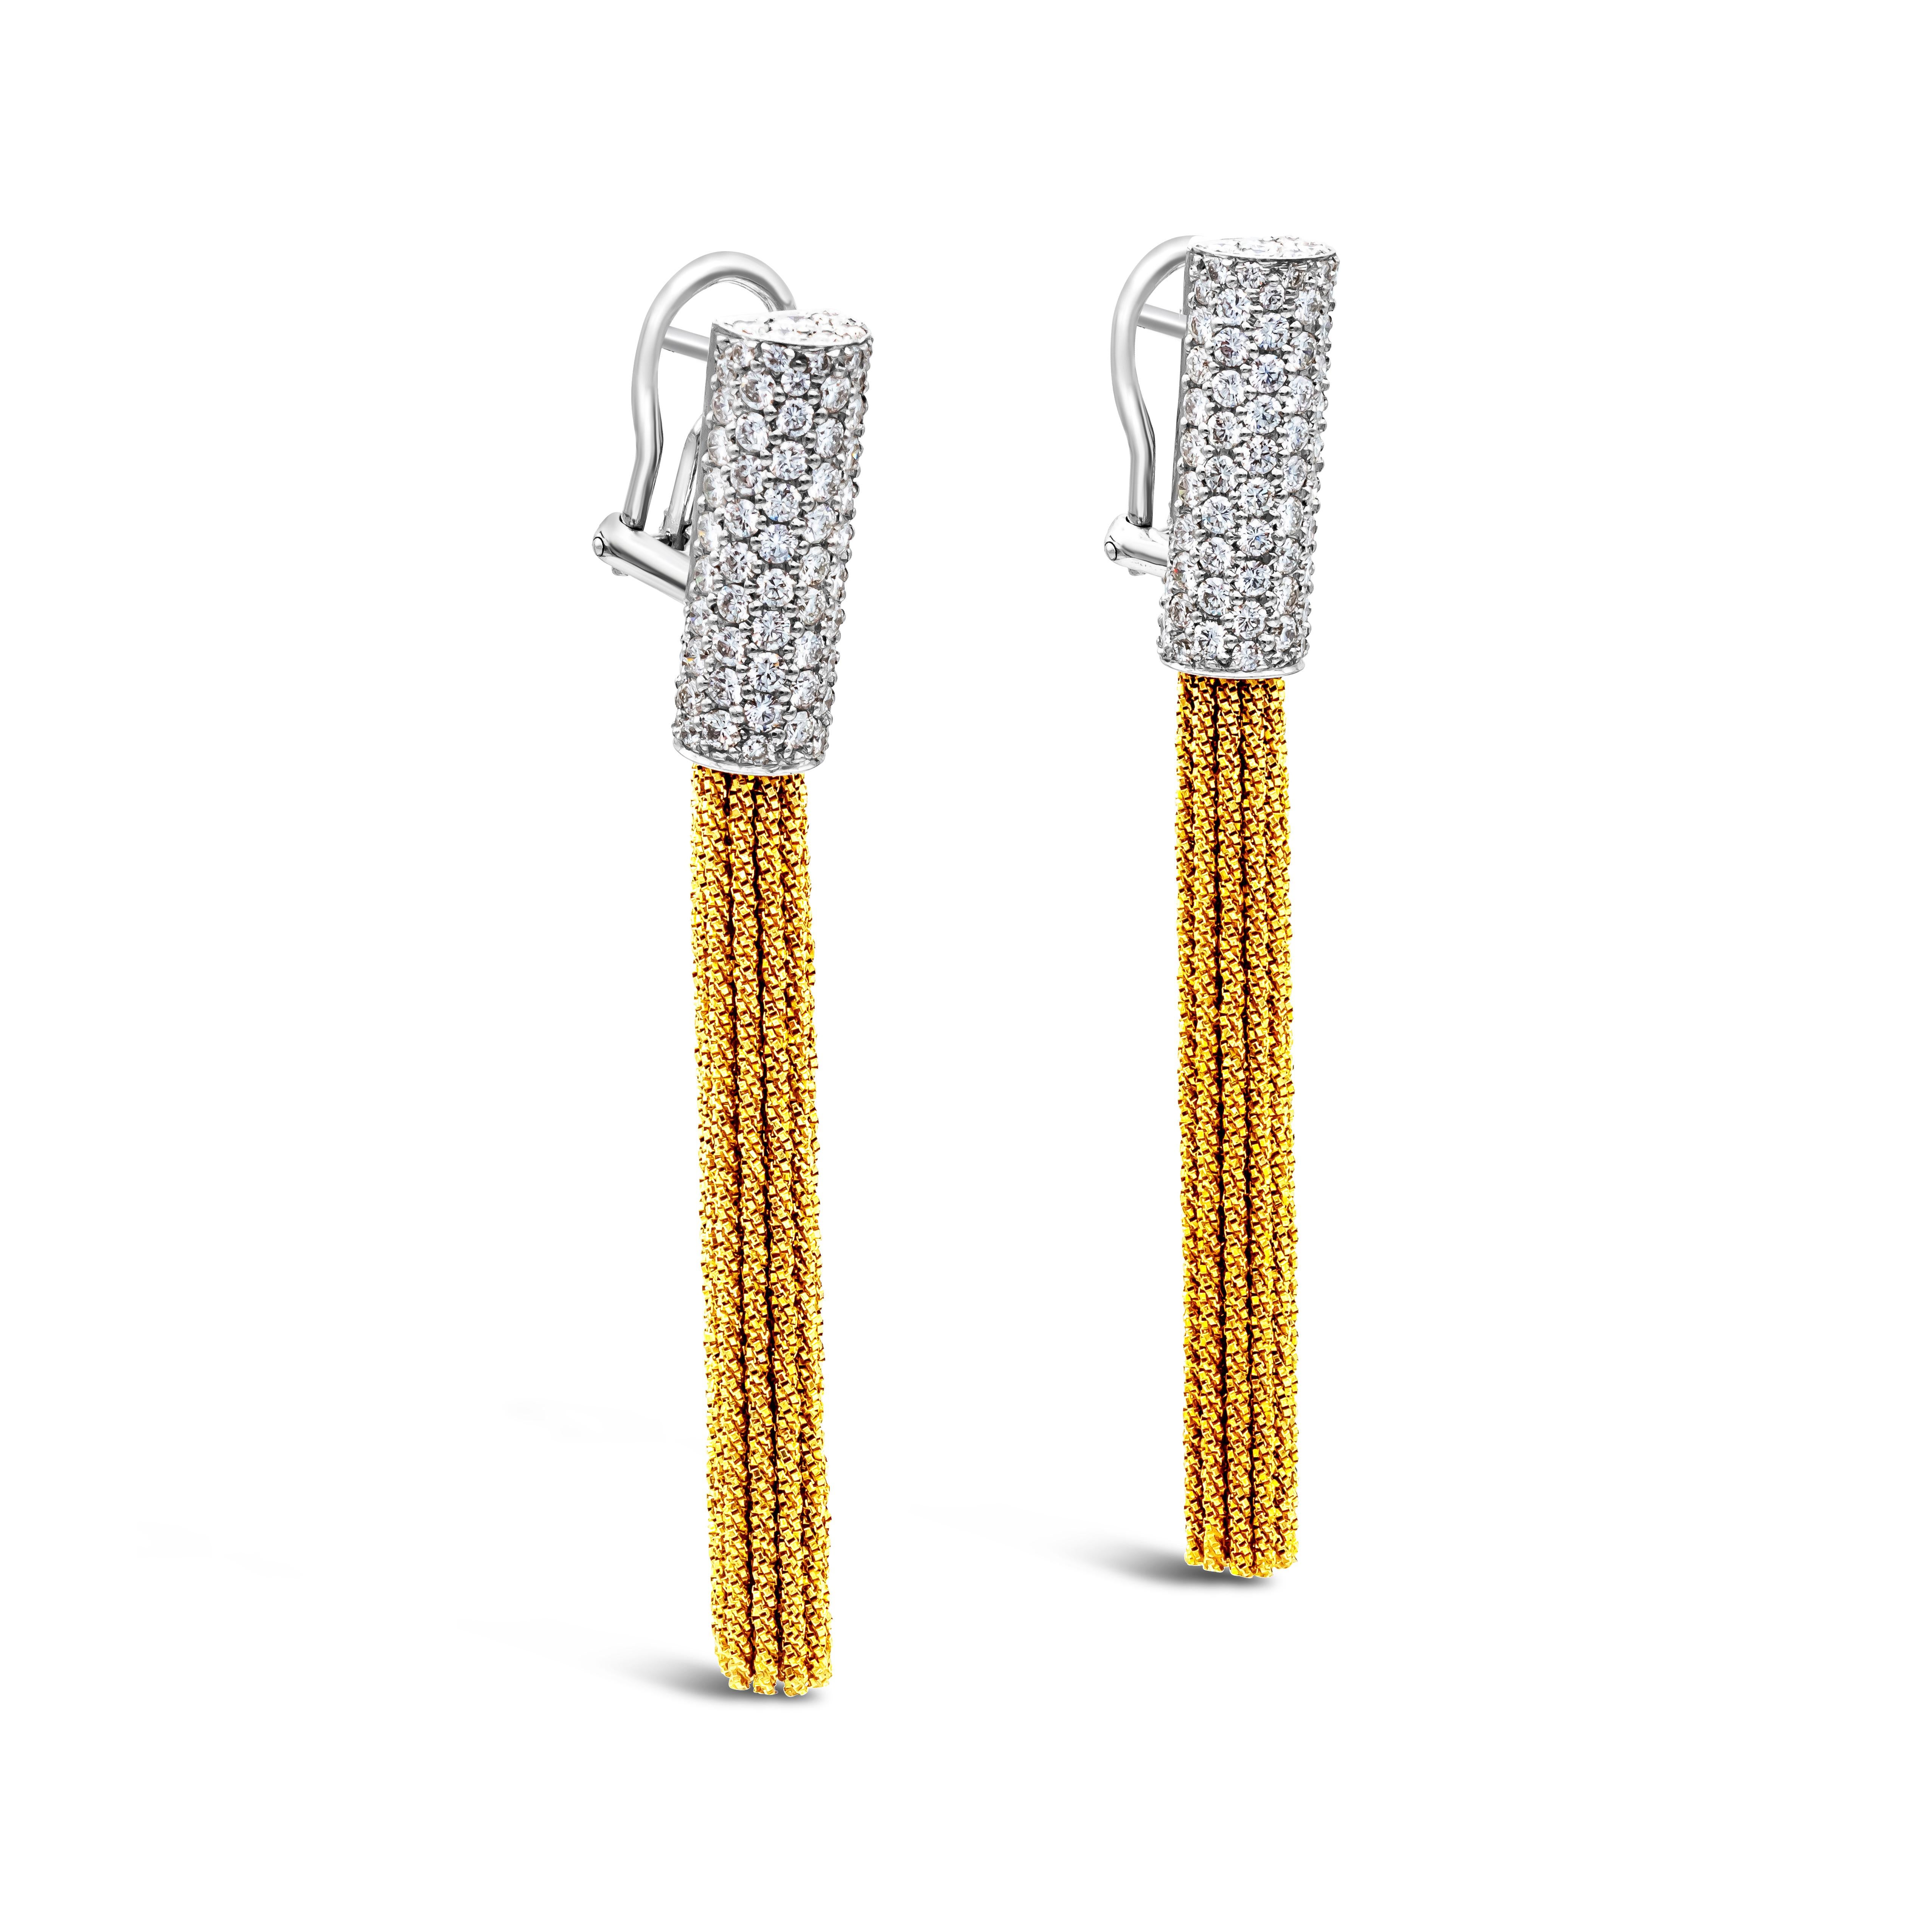 Yuri Ichihashi gewebt 18kt Gelbgold Quaste Ohrringe mit 3,25 Karat insgesamt in Diamanten, F Farbe und VS in Clarity gesetzt.  